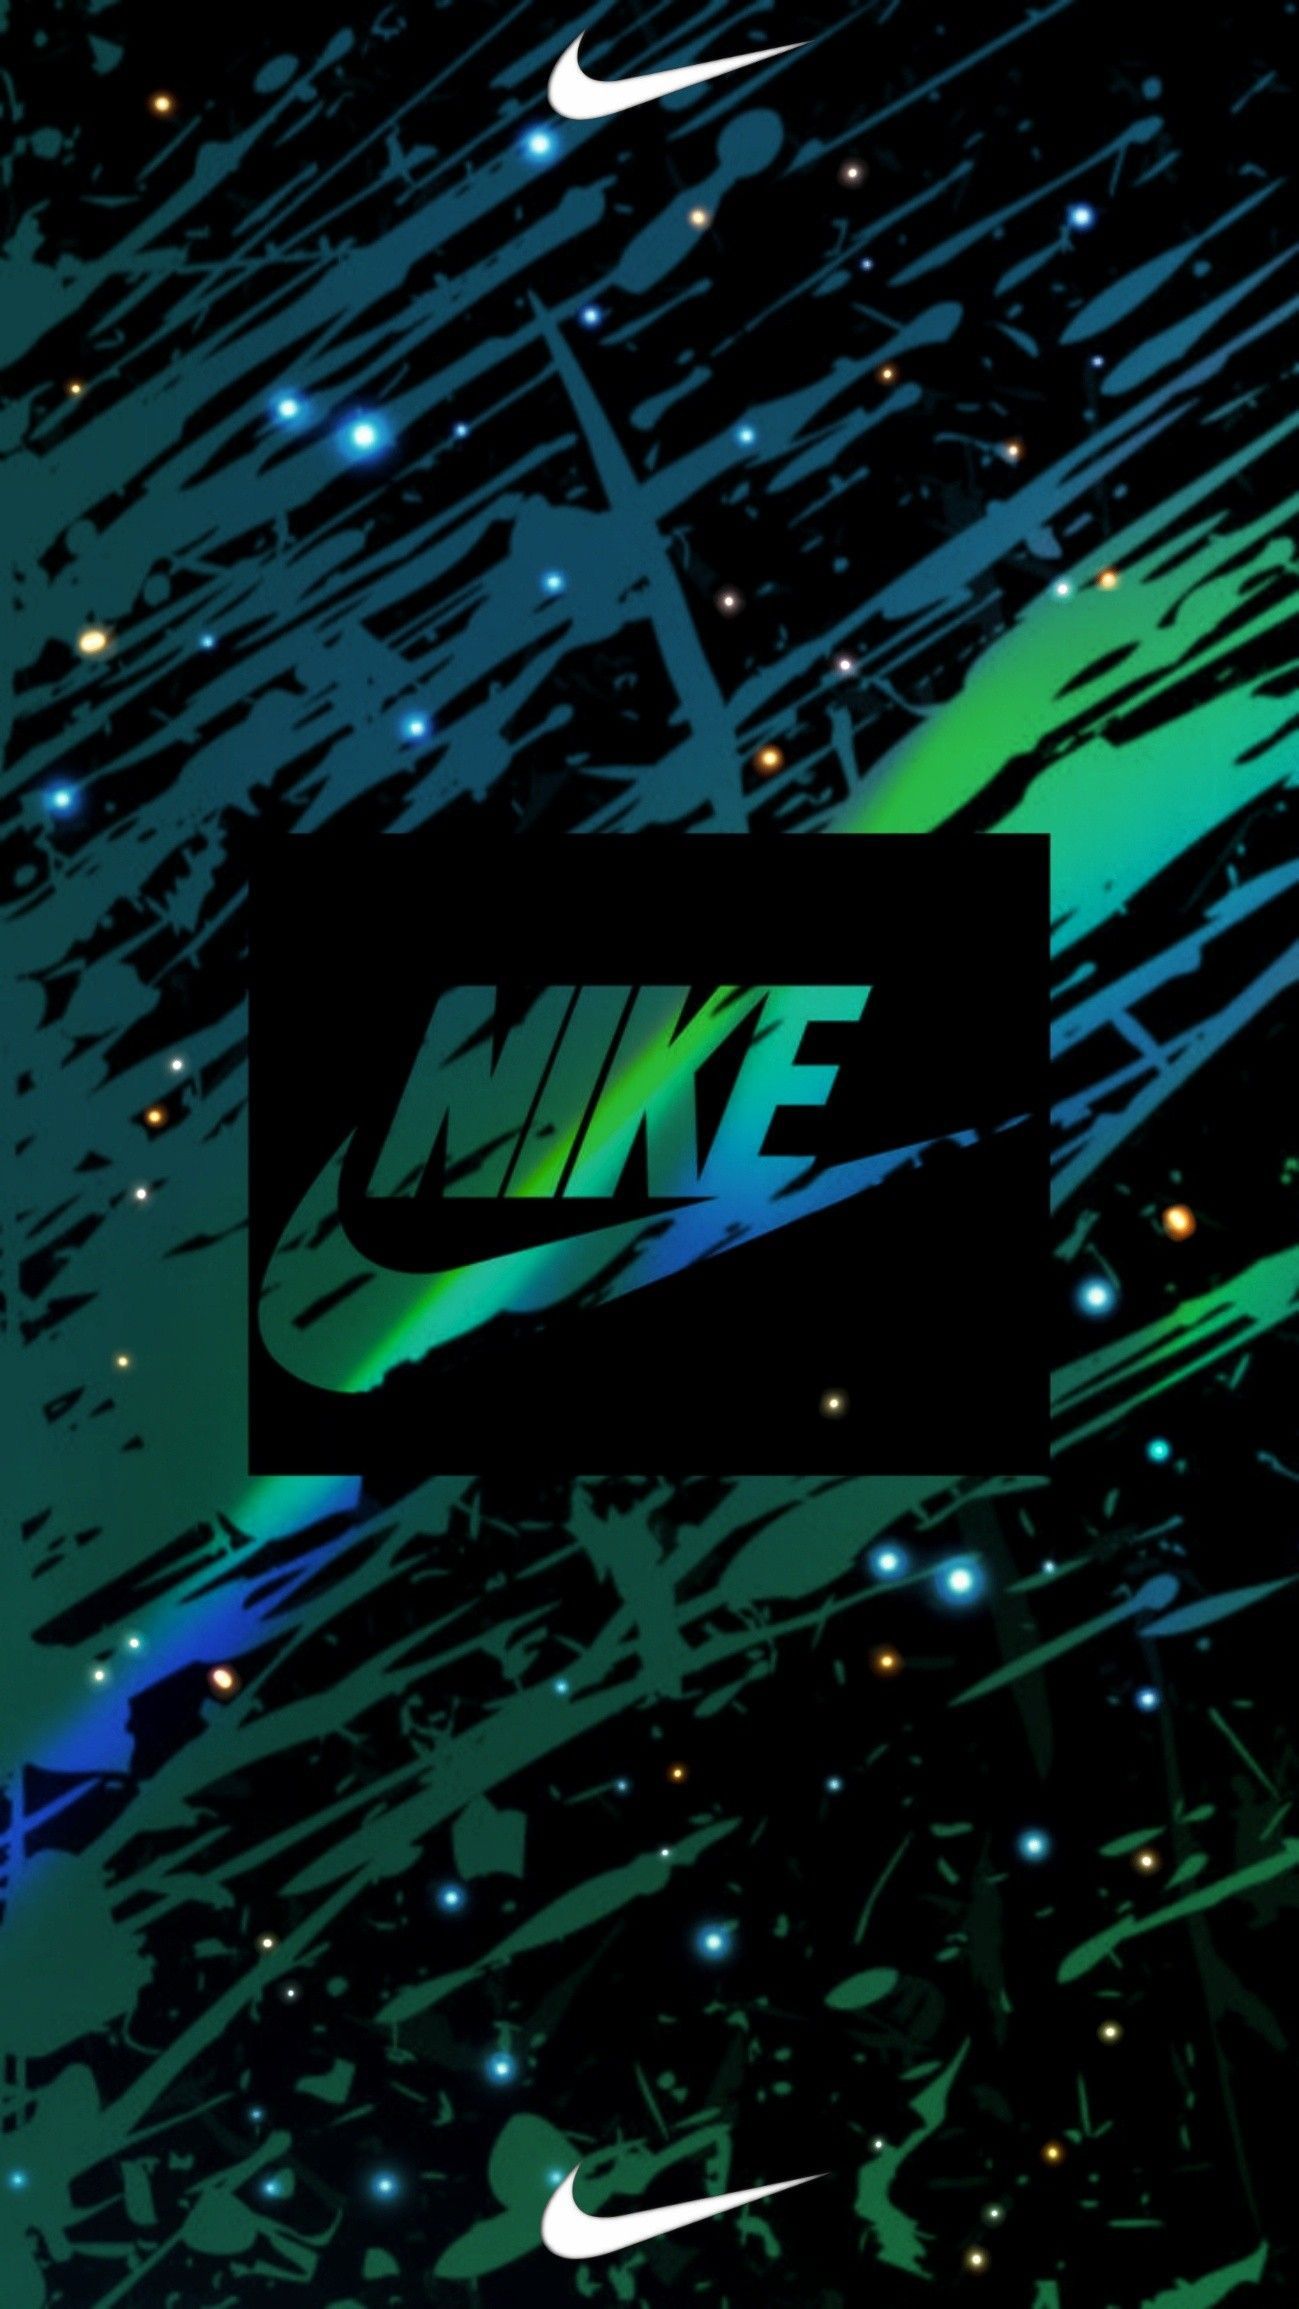 Nike. Nike wallpaper, Cool nike wallpaper, Cool background